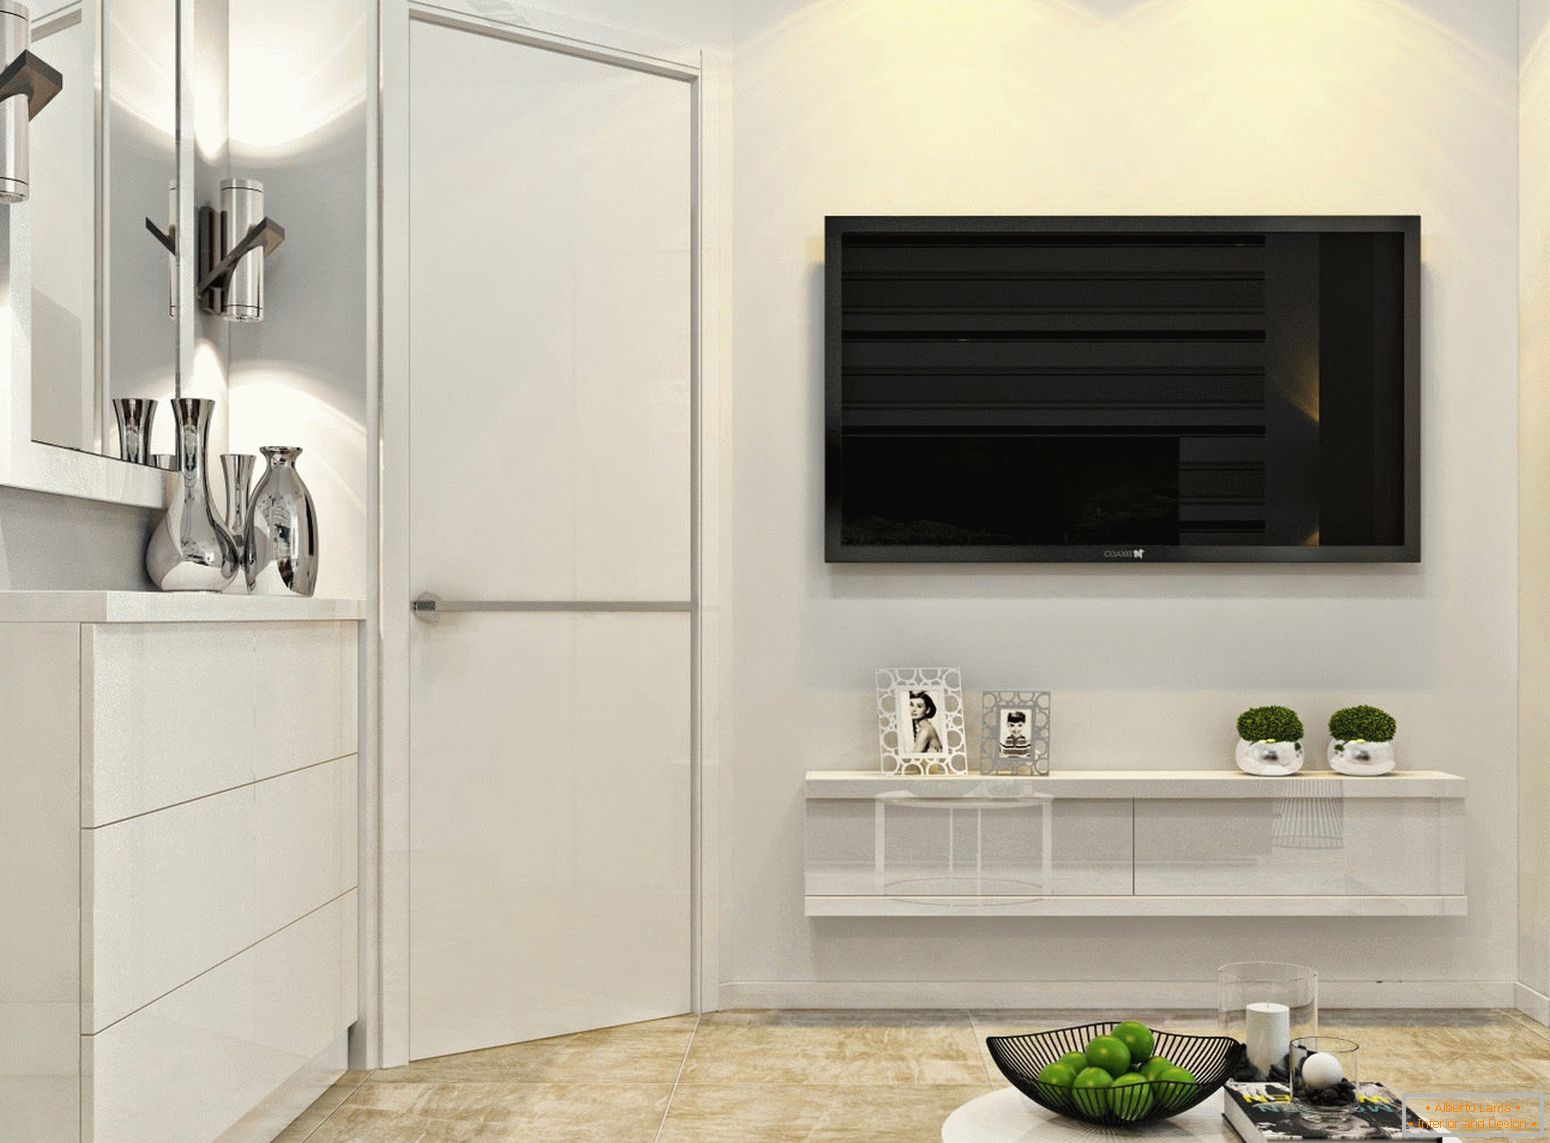 Televizor na stěně ve vnitřku bílého minimalismu